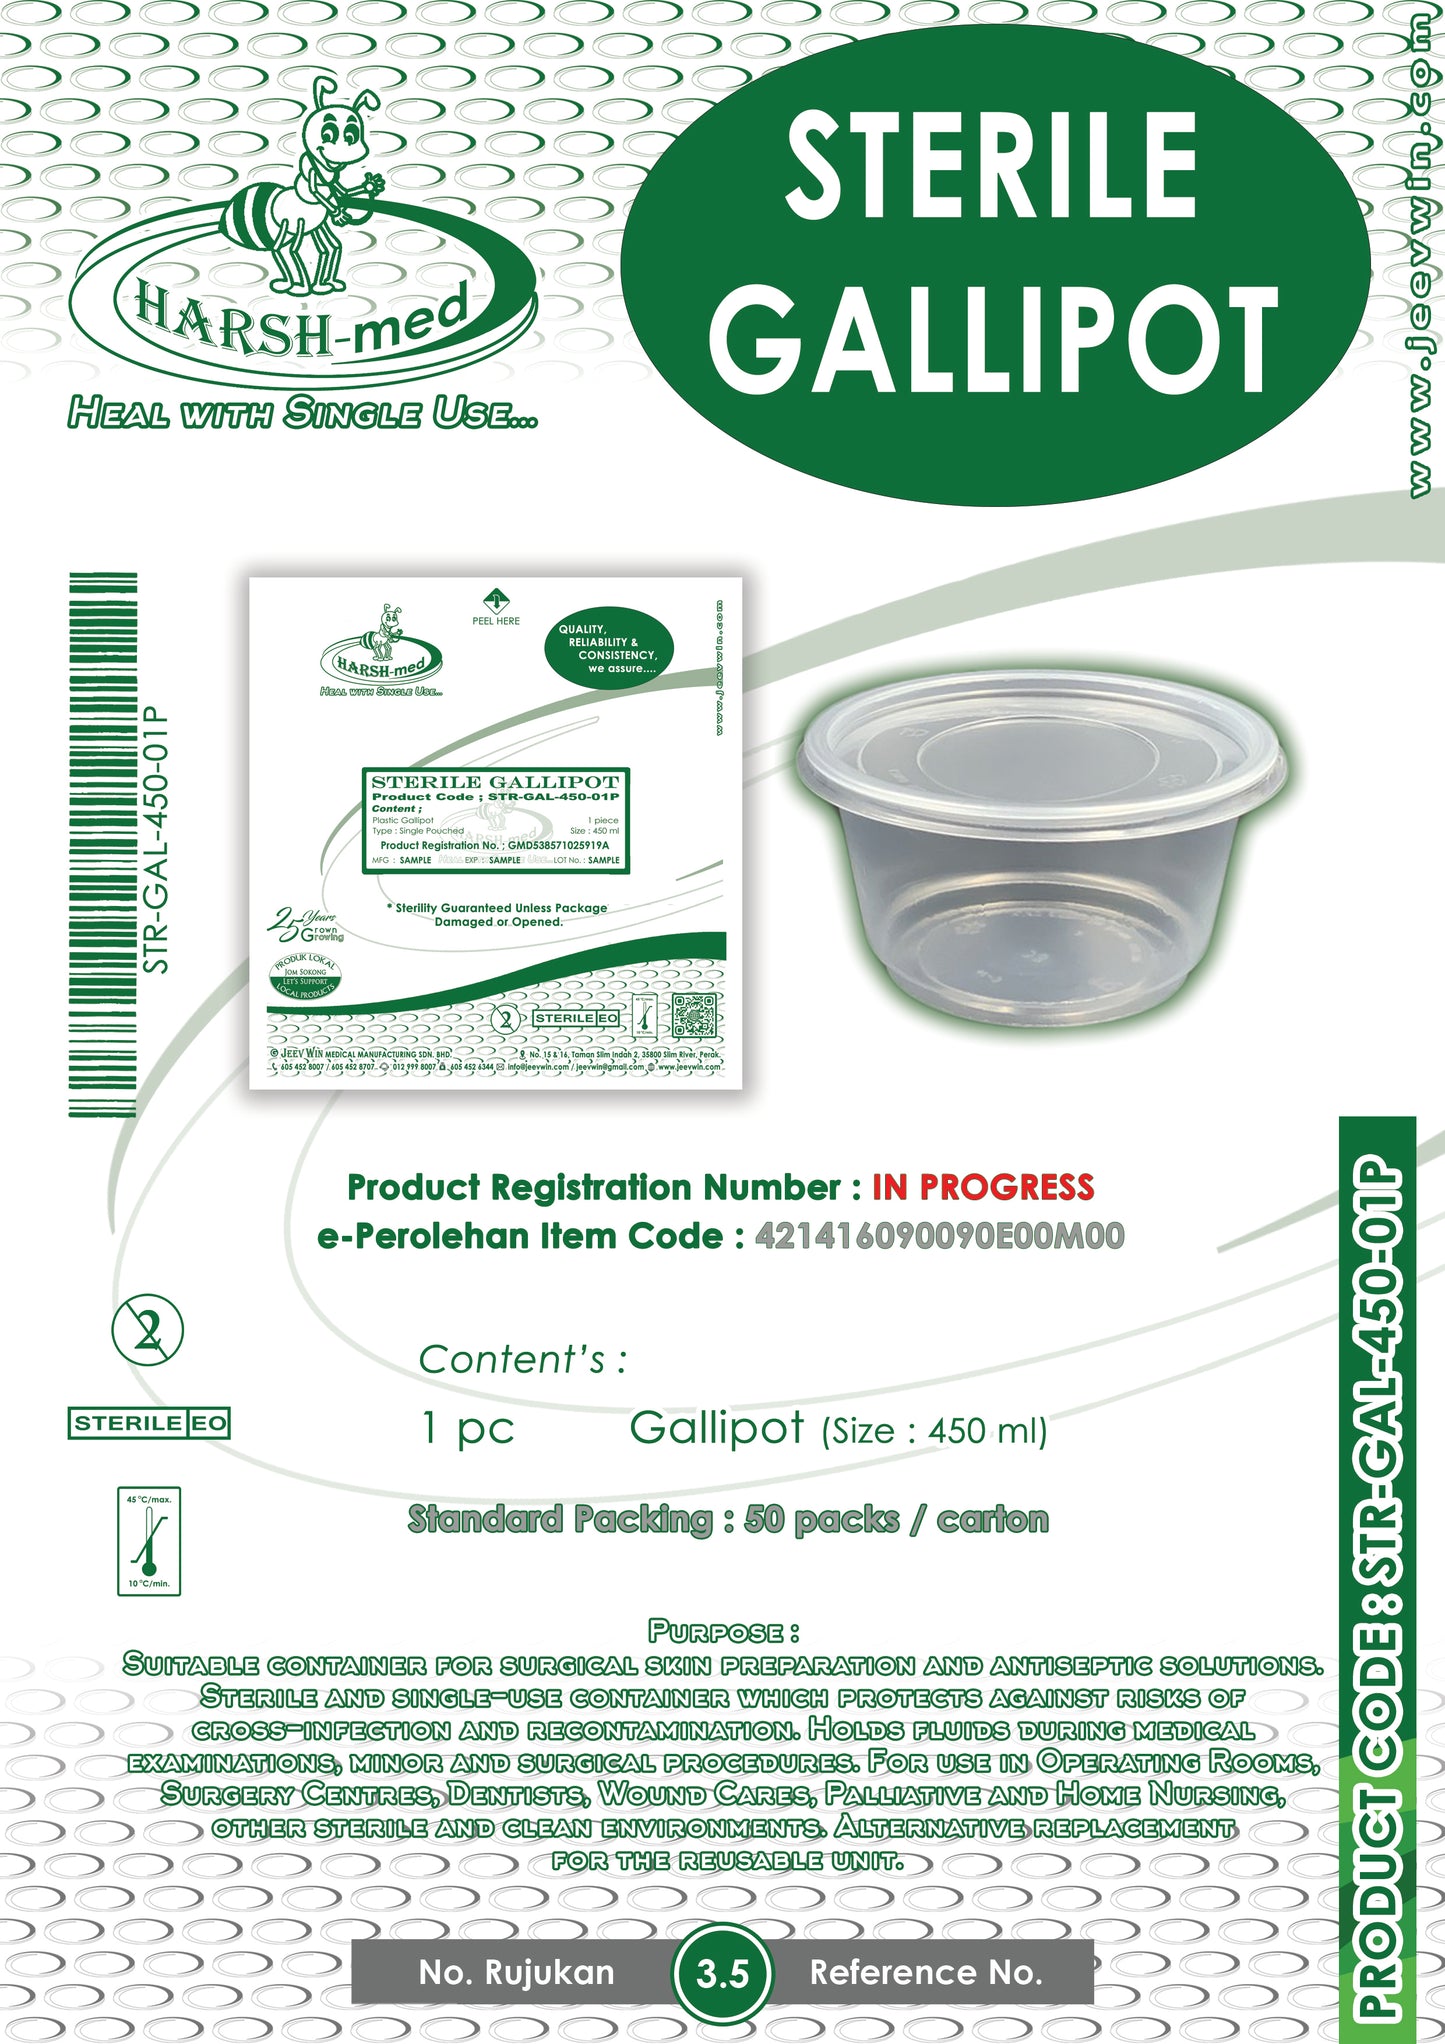 STERILE GALLIPOT - 450 ml